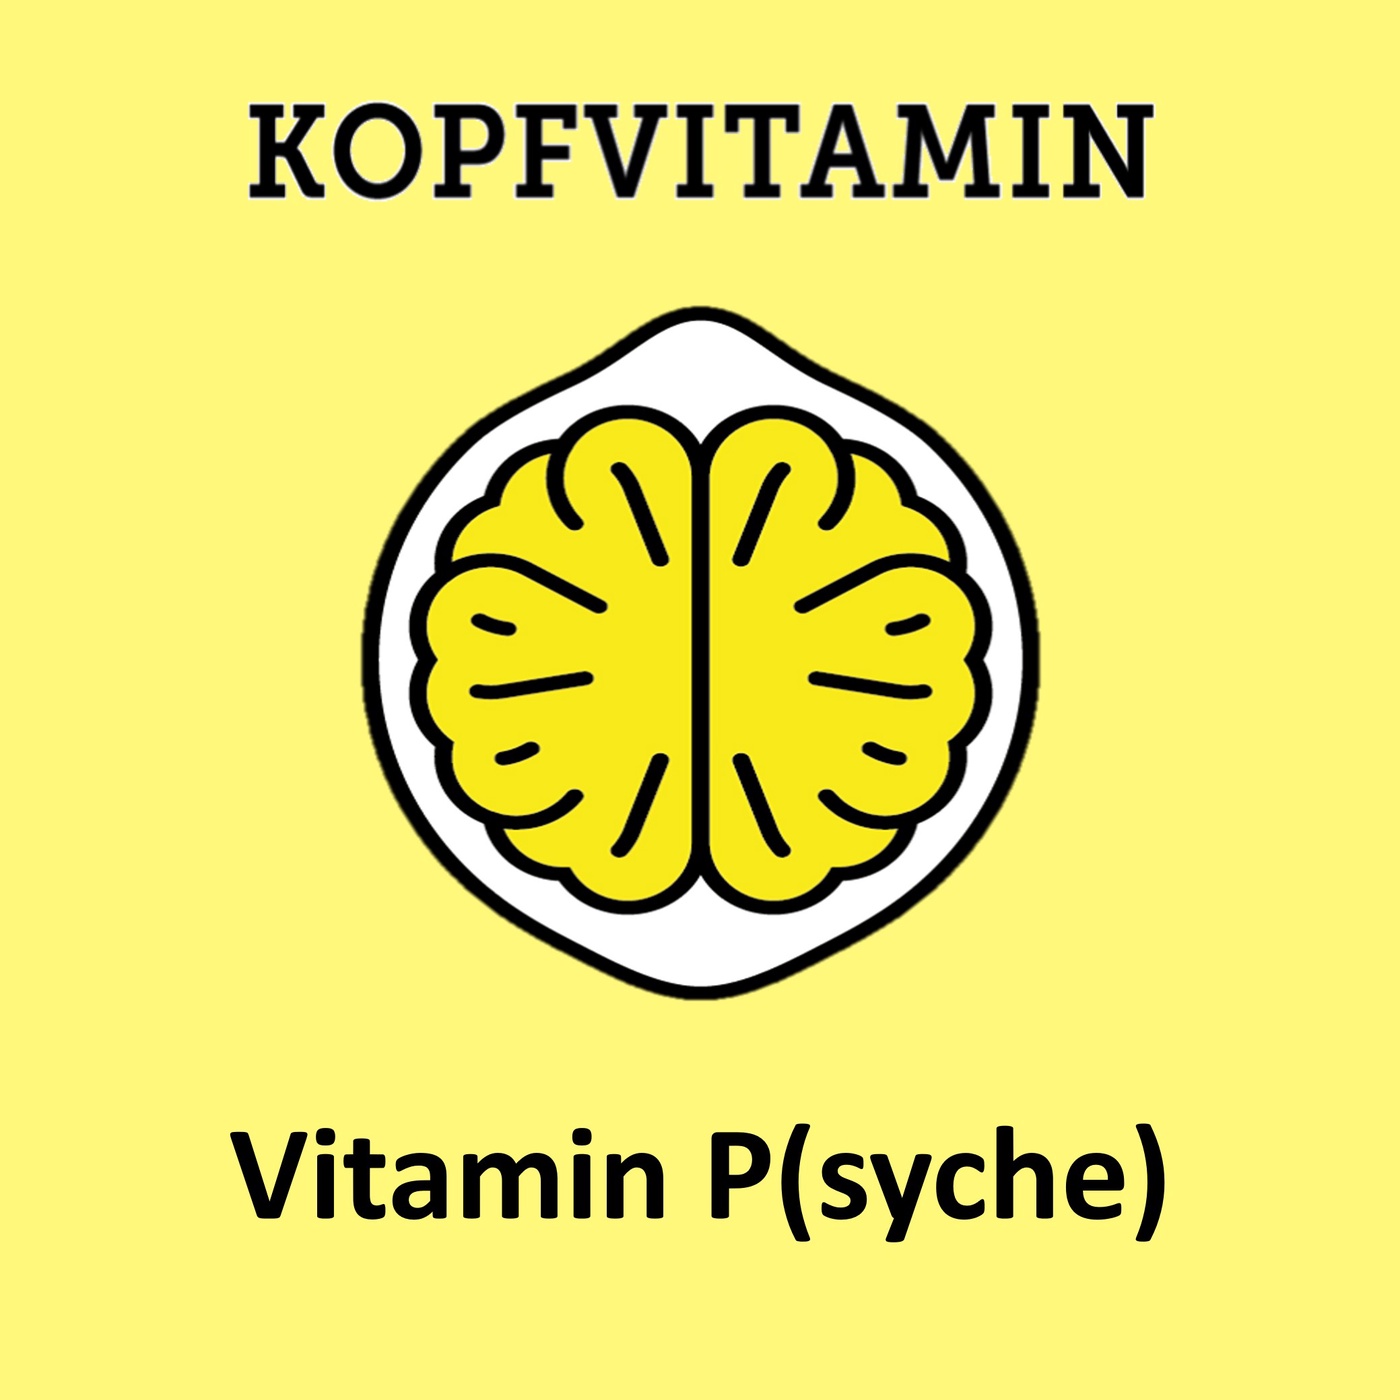 Vitamin P(syche)